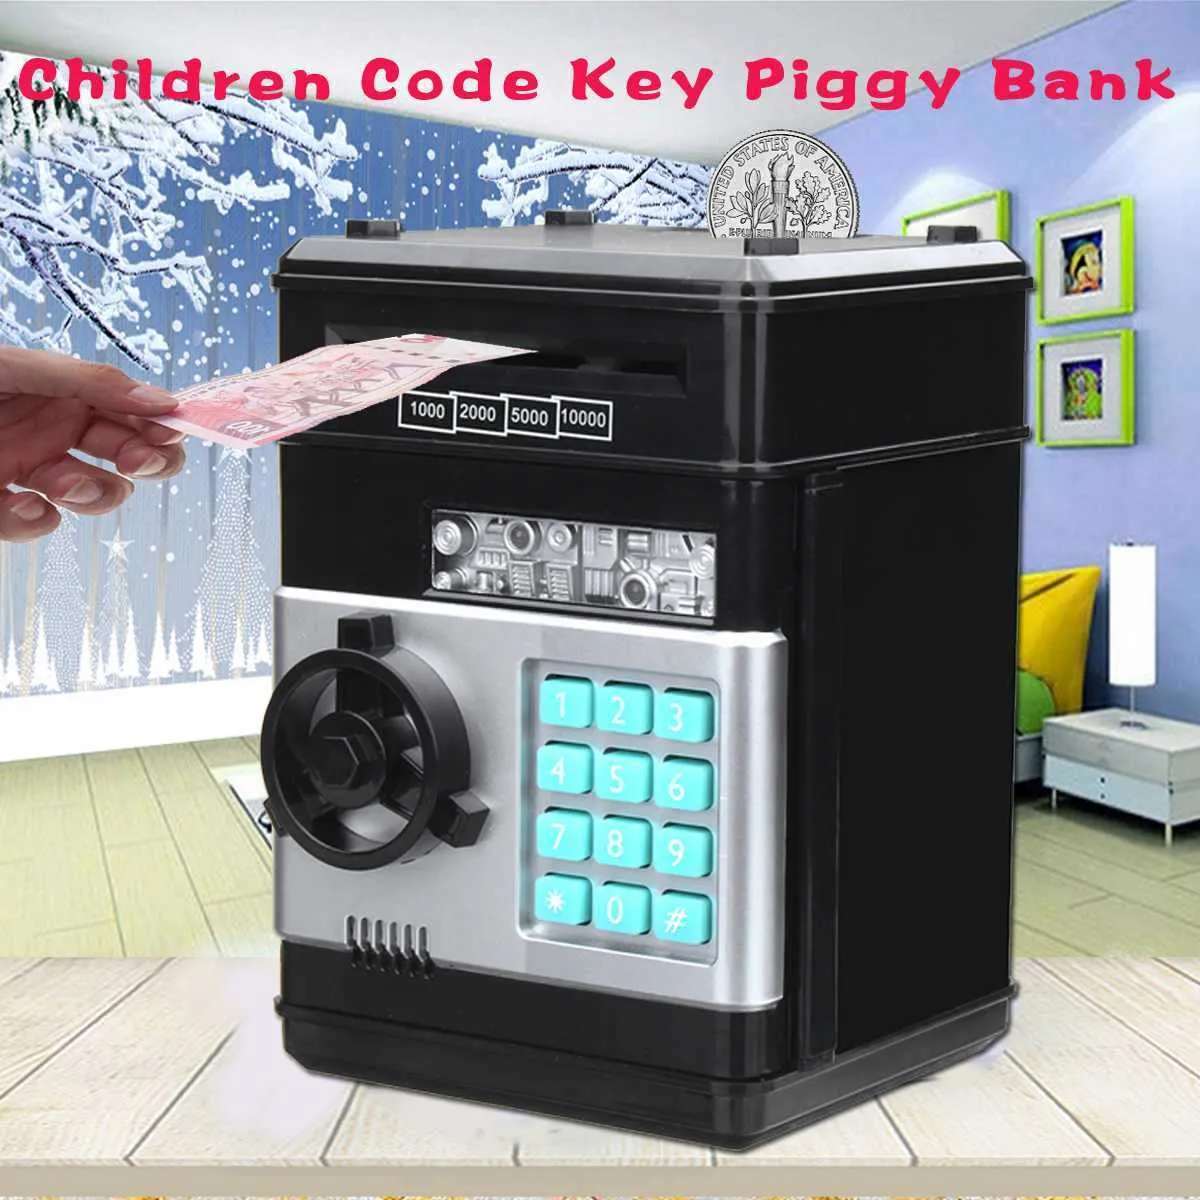 Obiekty dekoracyjne figurki elektroniczne hasło pieniądze pudełko kod klucz blokada świnka bank automatyczne monety gotówkowe oszczędność pieniędzy mini safe pudełko dziecięce prezent g230523